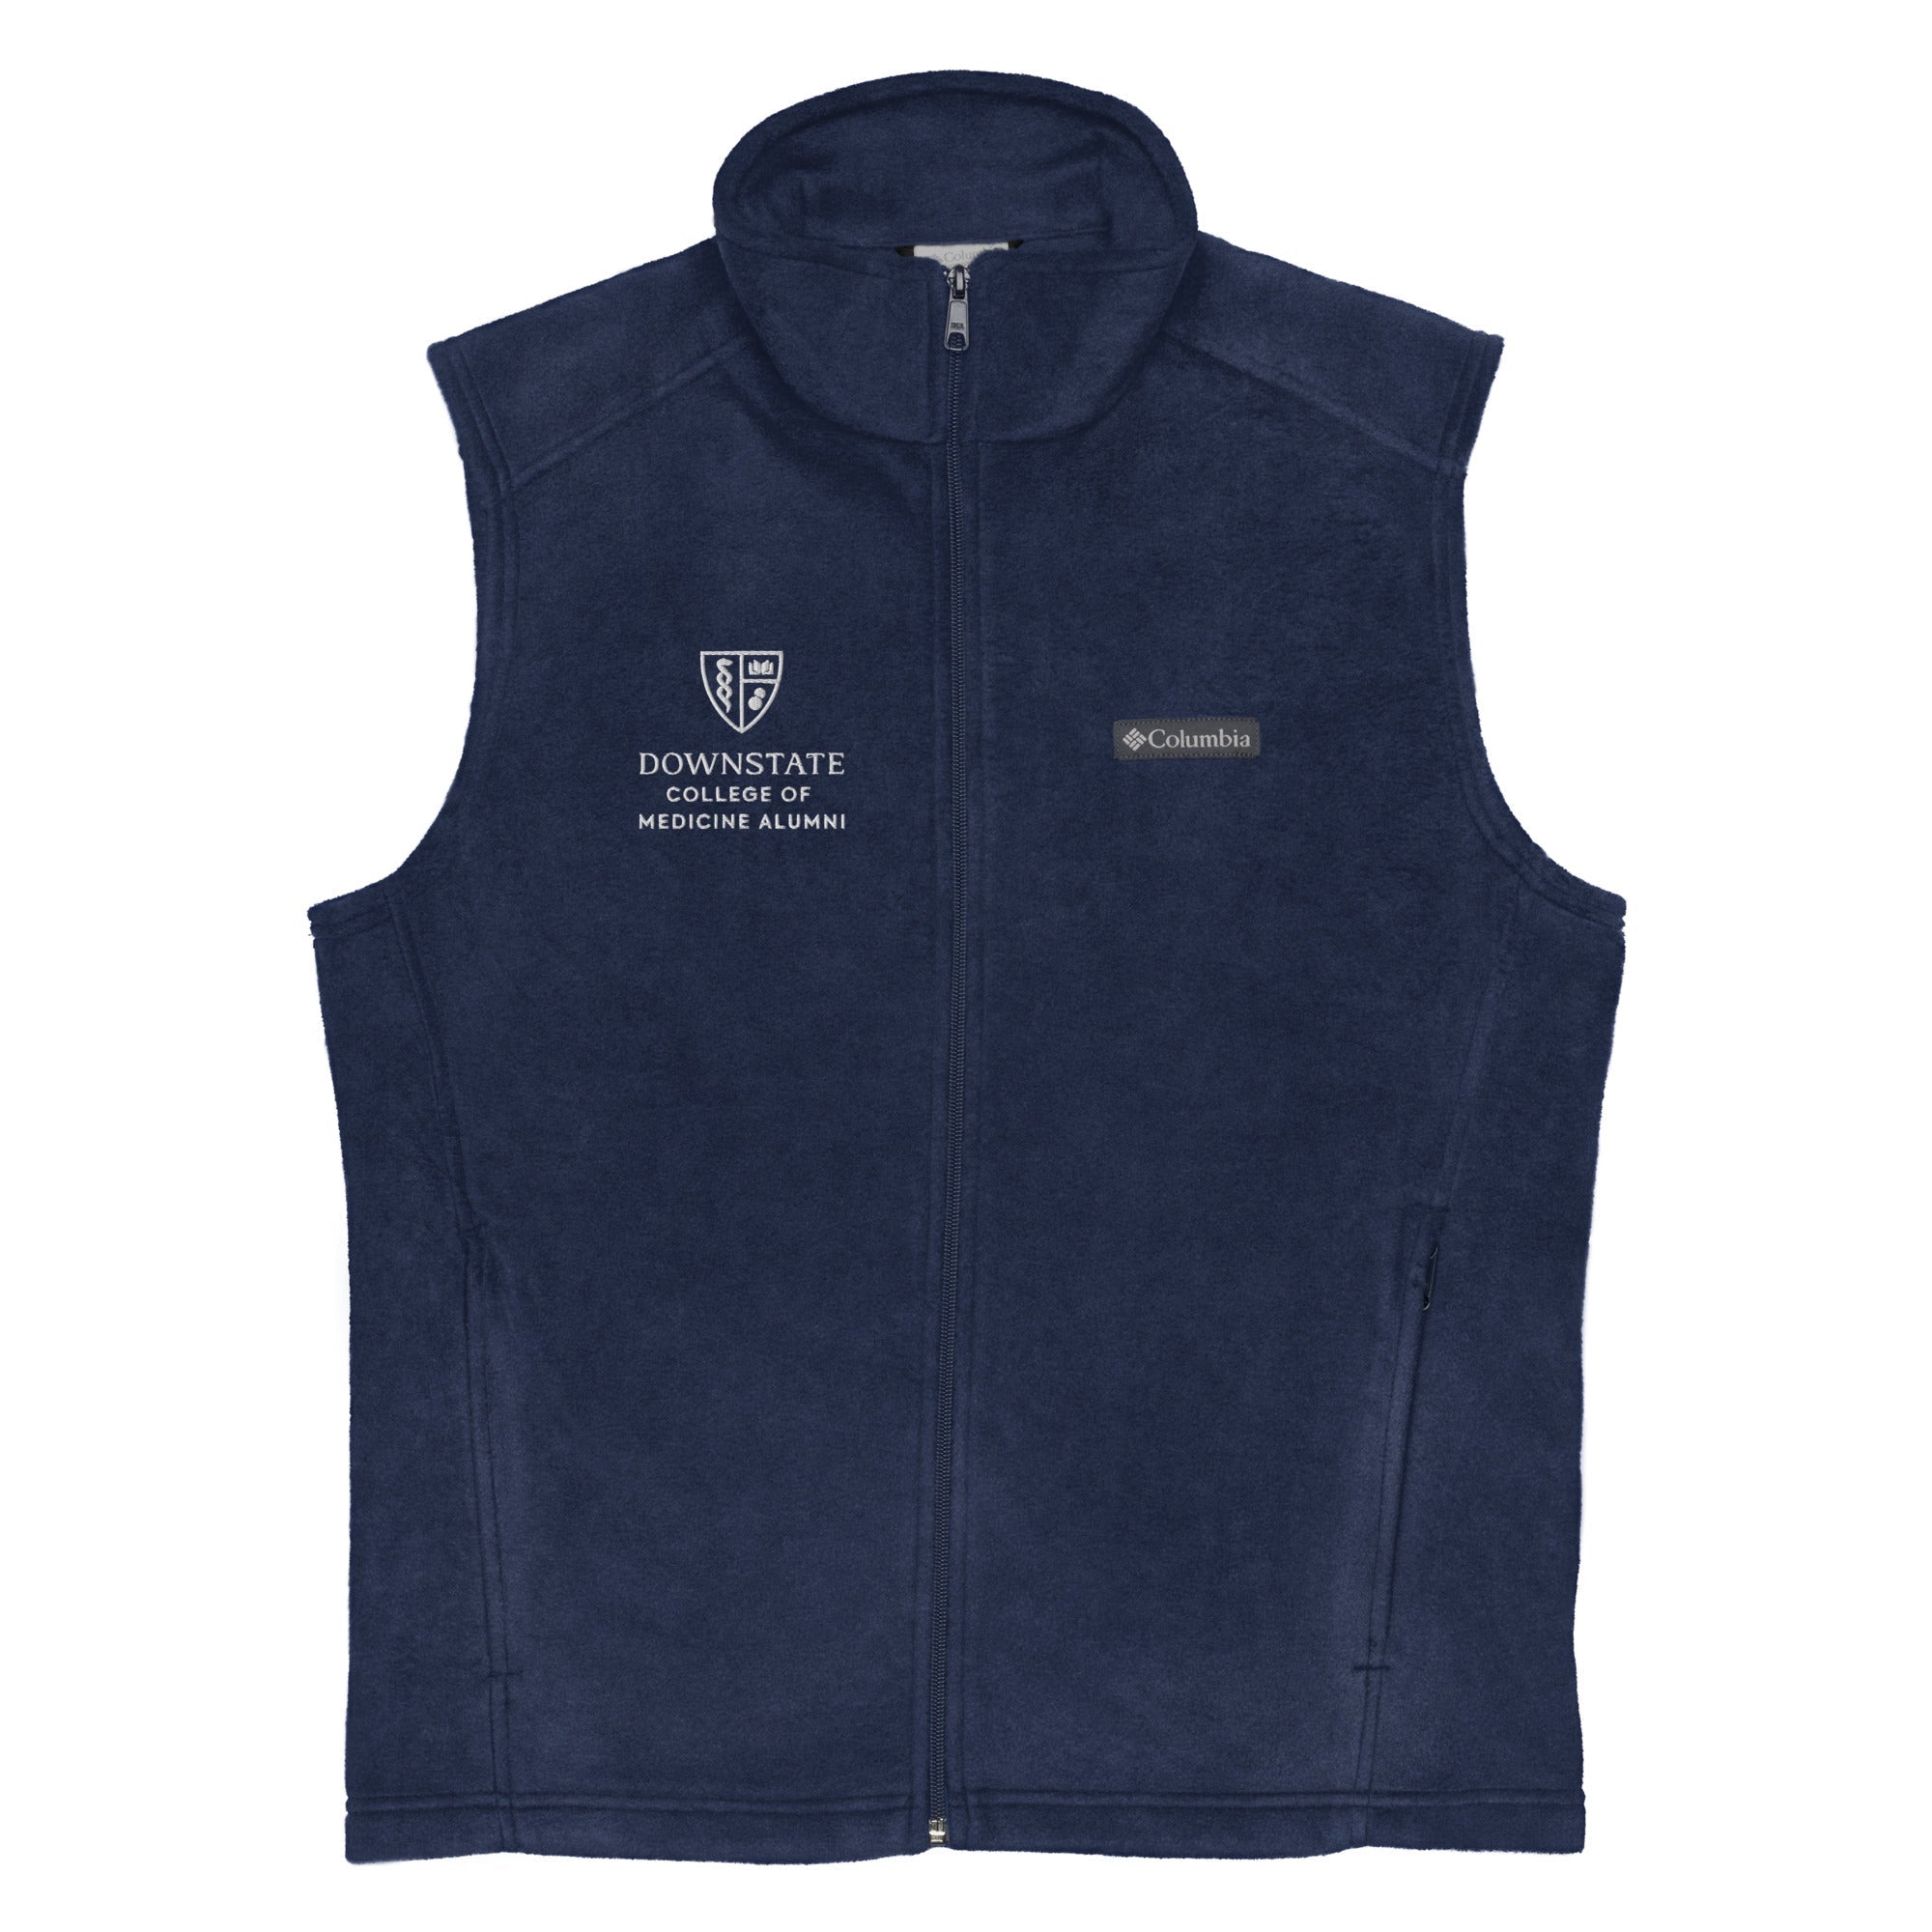 AACMSD Men’s Columbia fleece vest